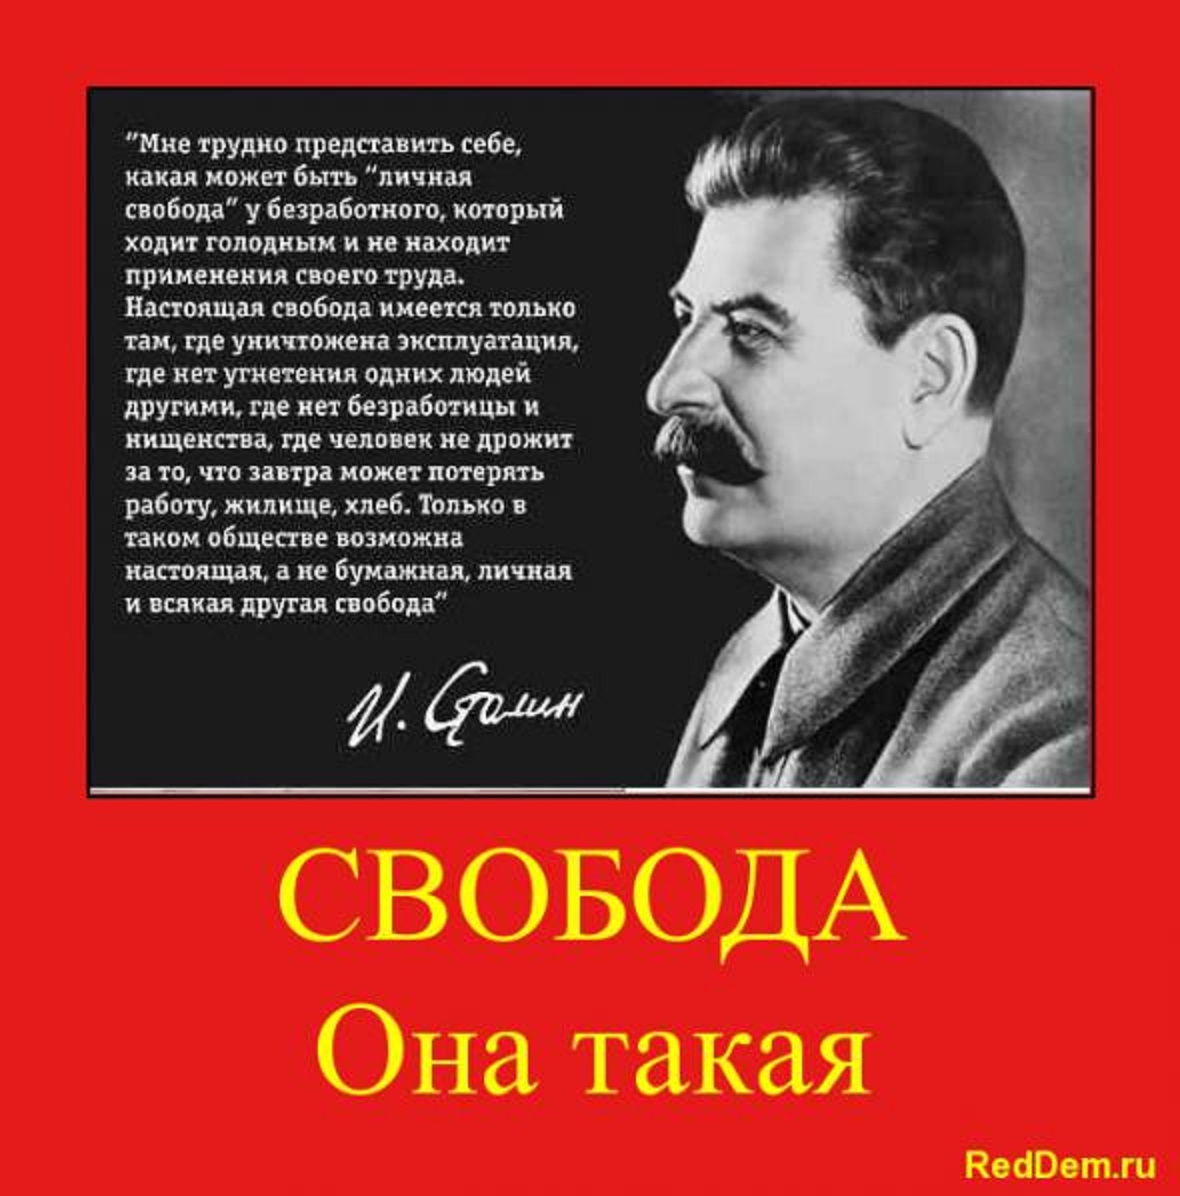 Читать про сталина. Иосиф Сталин. Высказывания Сталина. Фразы Сталина. Сталин о свободе человека.